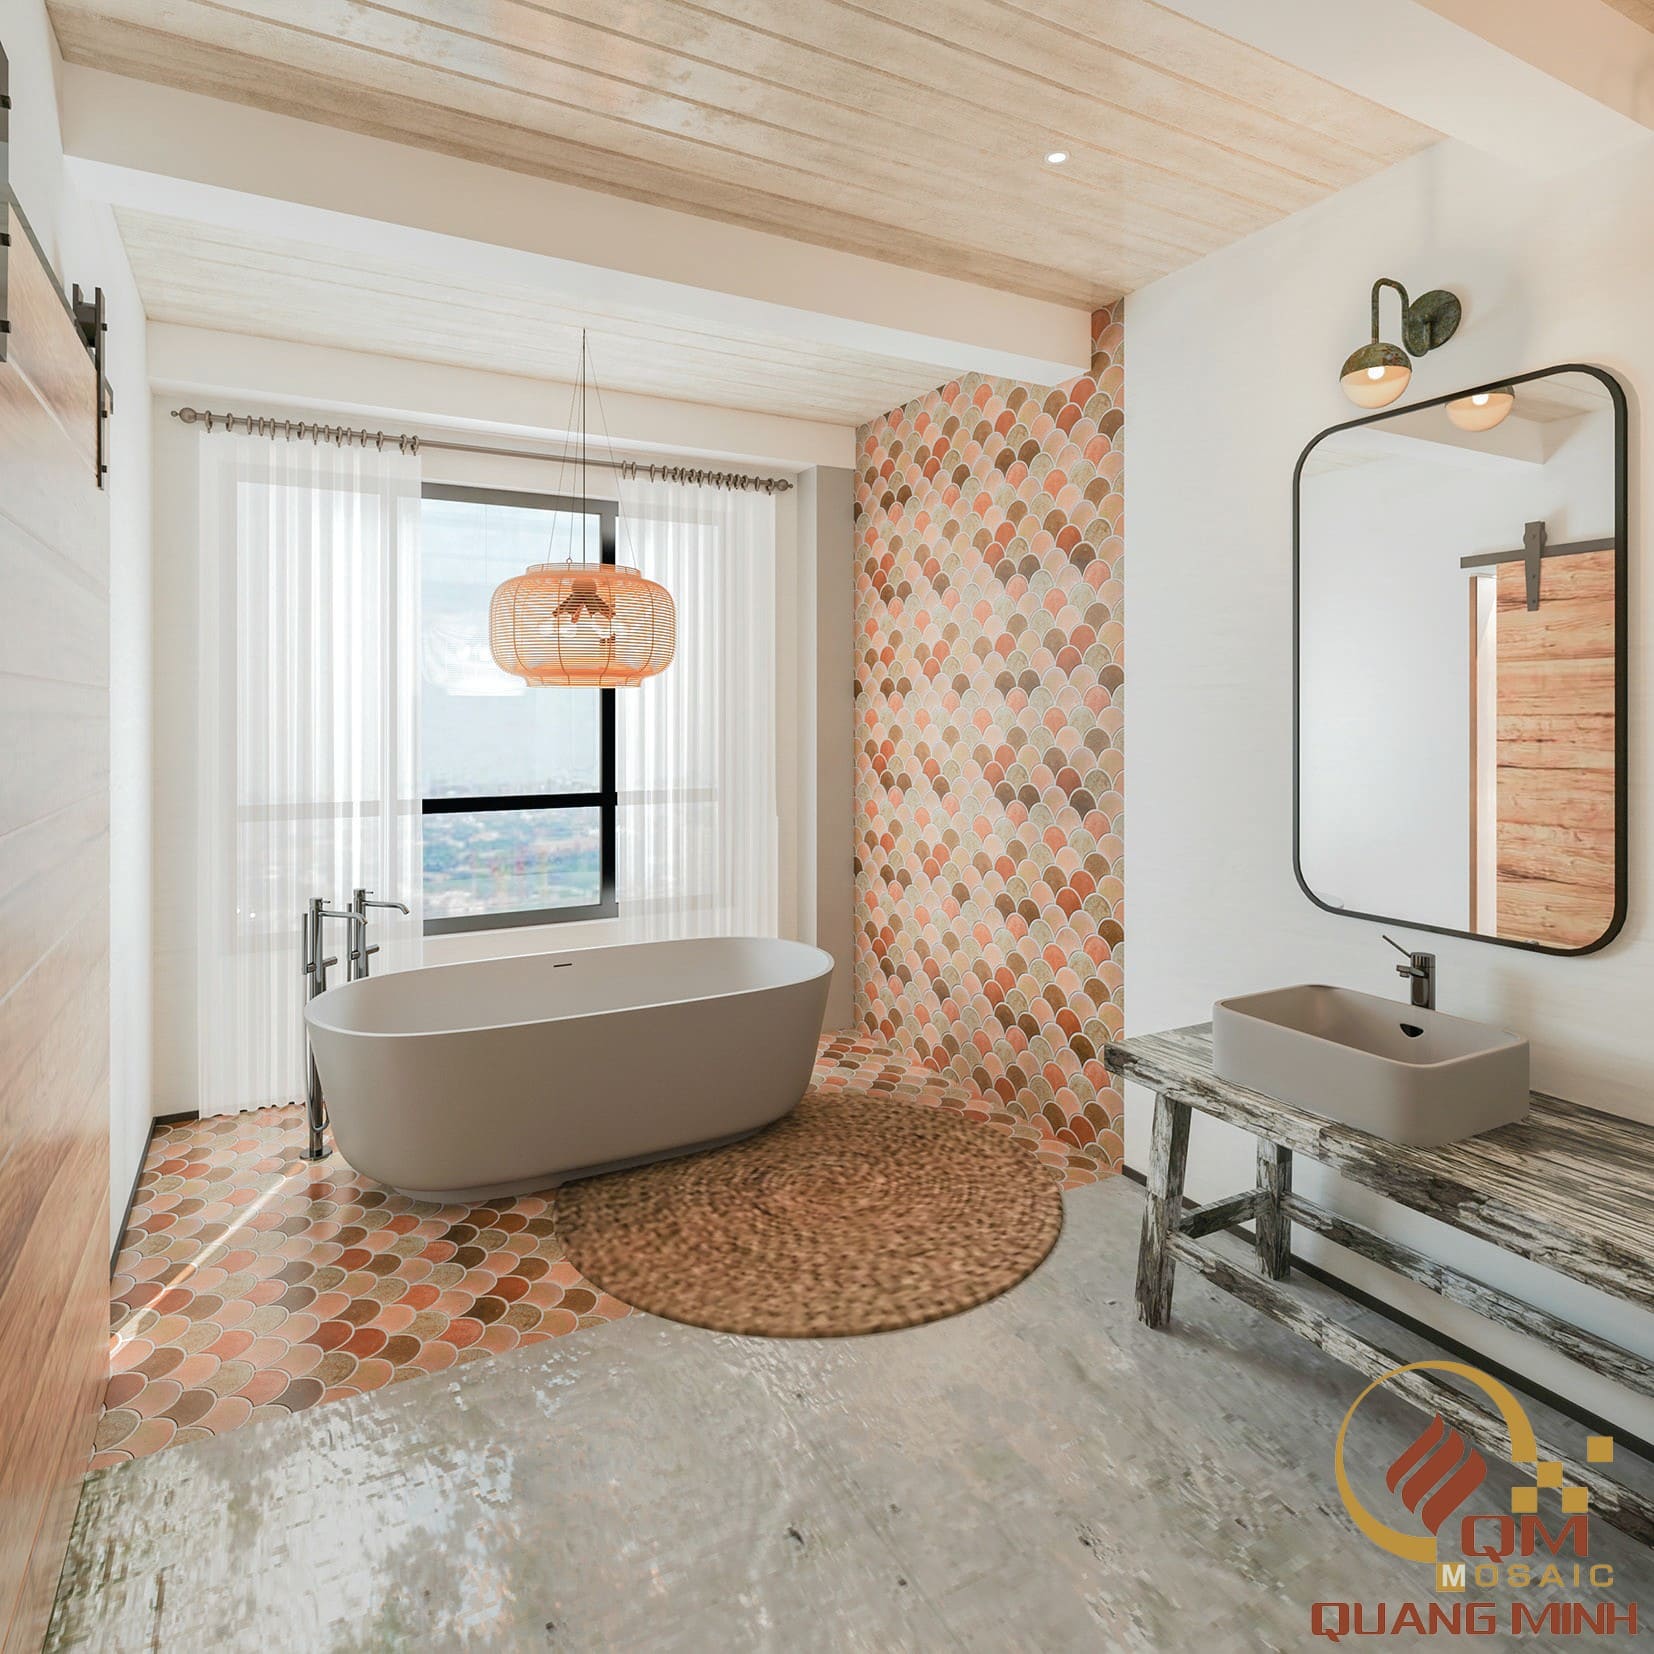 Gạch mosaic vảy cá màu hồng phù hợp với không gian phòng khách, phòng ngủ